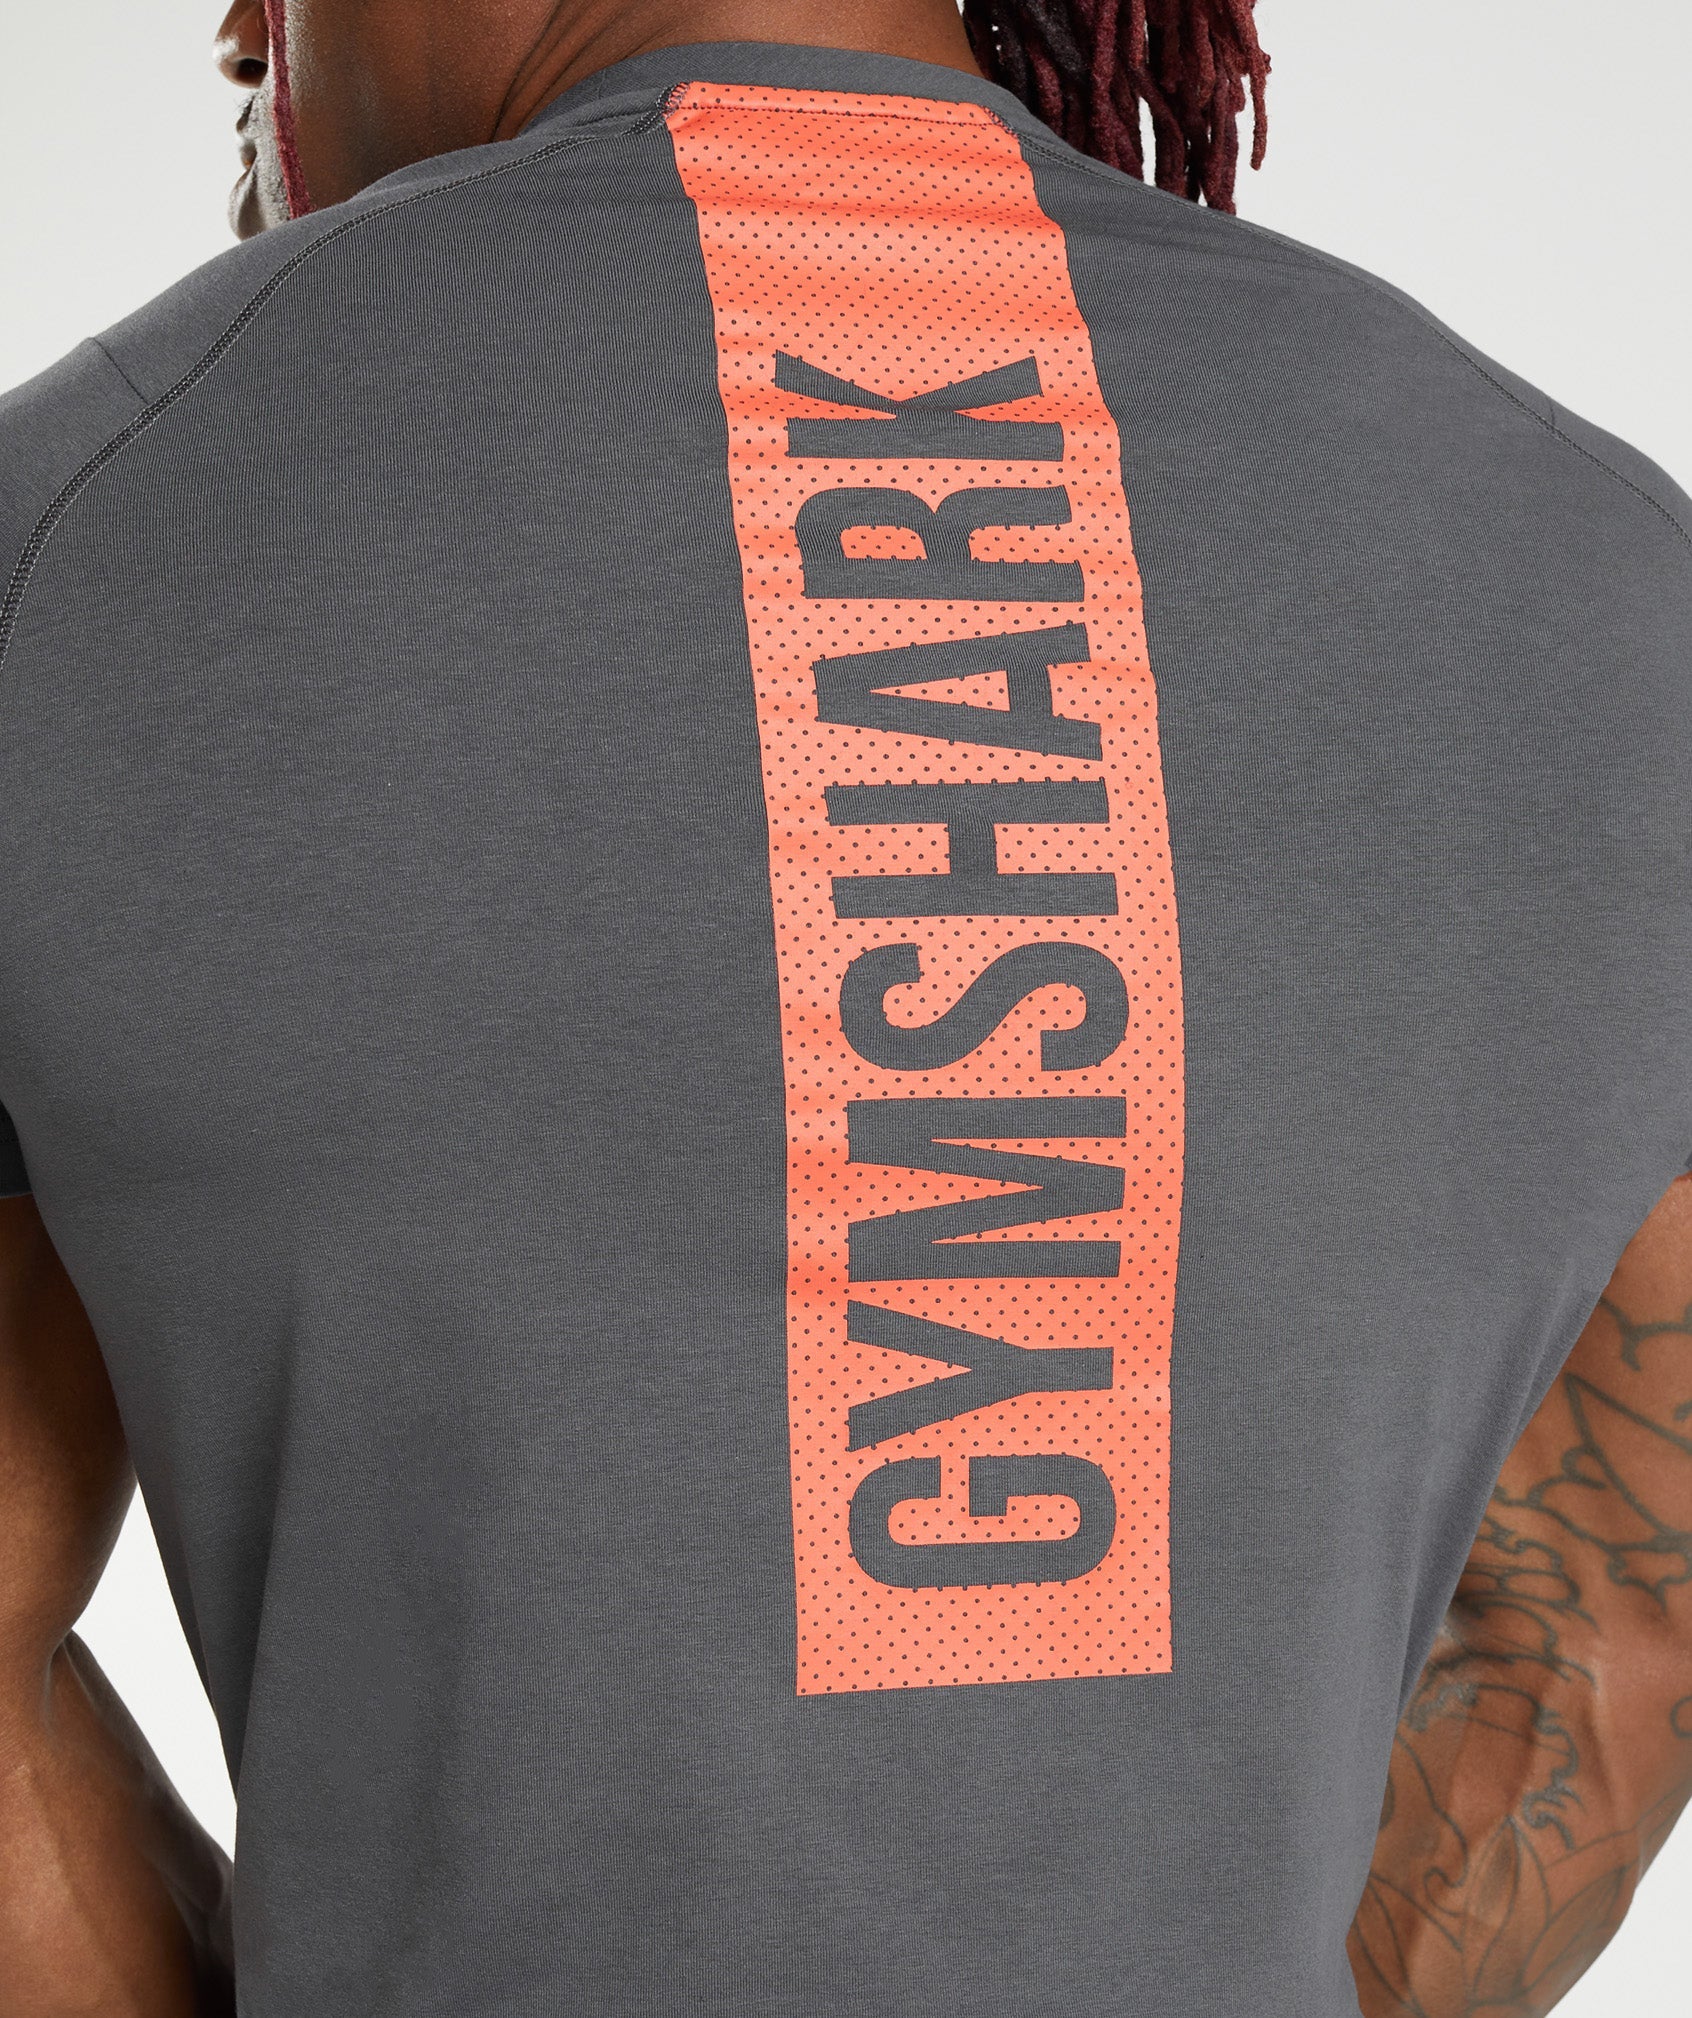 Gymshark Sport Seamless T-Shirt - Black/Light Grey